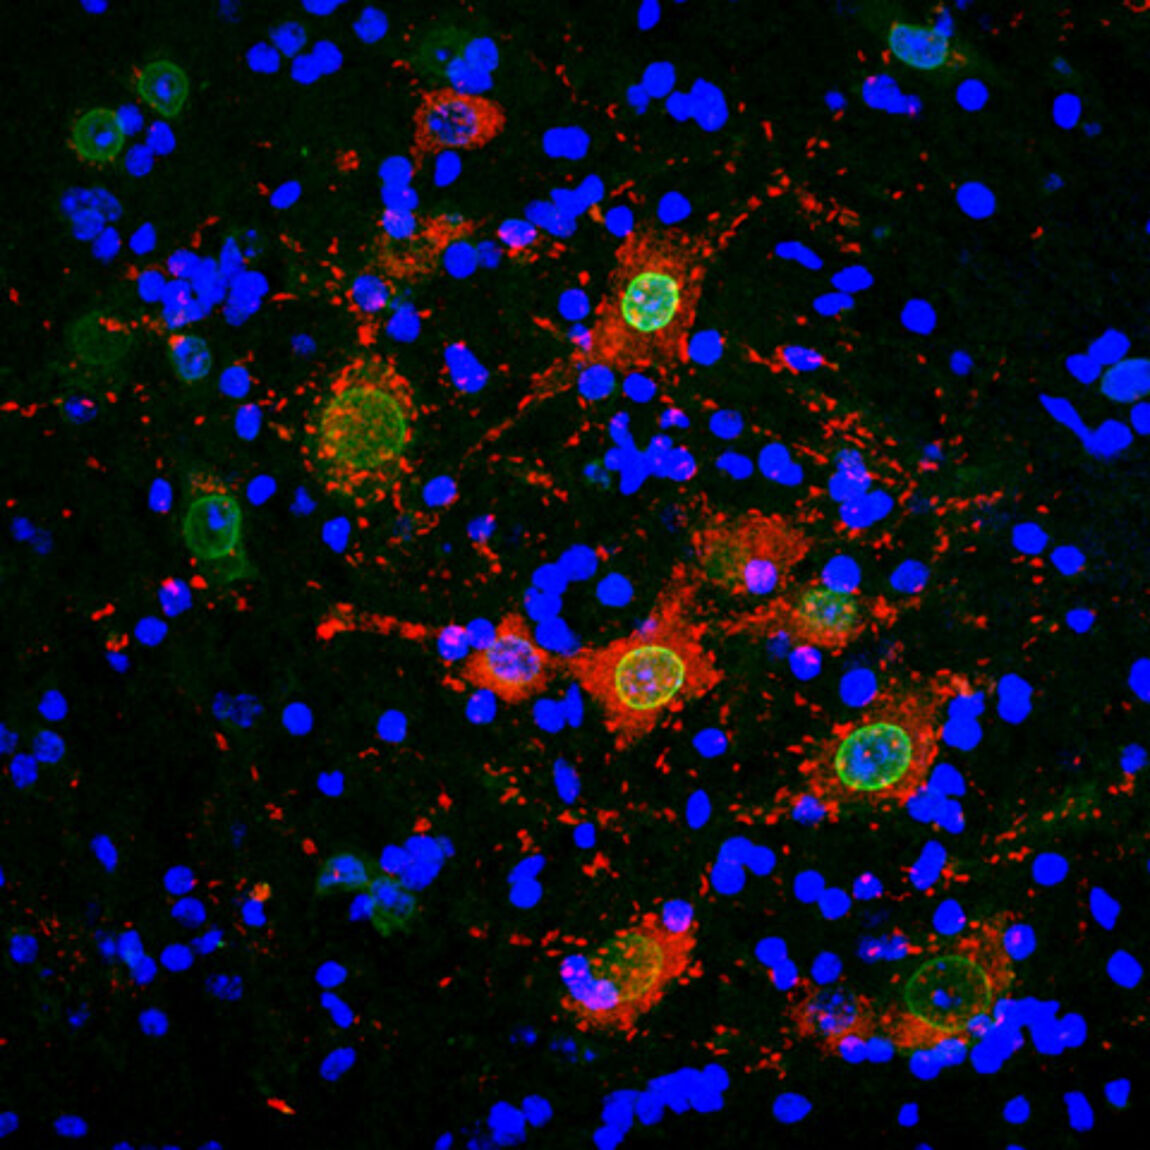 Image d'immunofluorescence dans la moëlle épinière d'une souris SLA. Crédit Sylvie Grosch